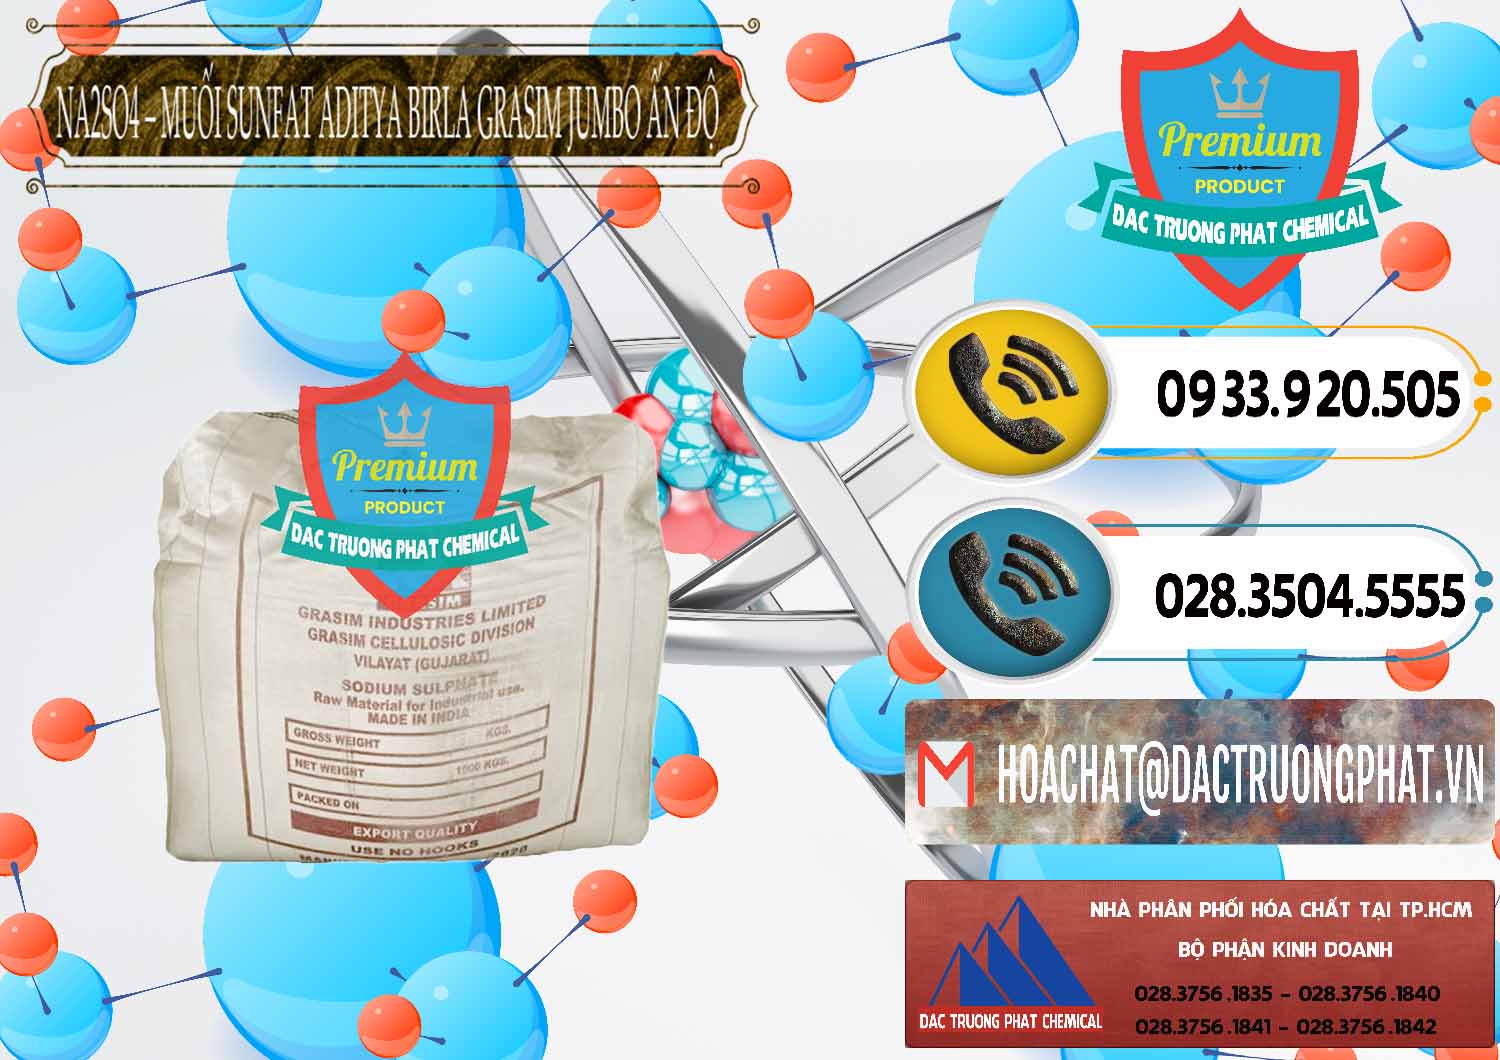 Cty chuyên bán ( cung cấp ) Sodium Sulphate - Muối Sunfat Na2SO4 Jumbo Bành Aditya Birla Grasim Ấn Độ India - 0357 - Nơi cung cấp _ bán hóa chất tại TP.HCM - hoachatdetnhuom.vn